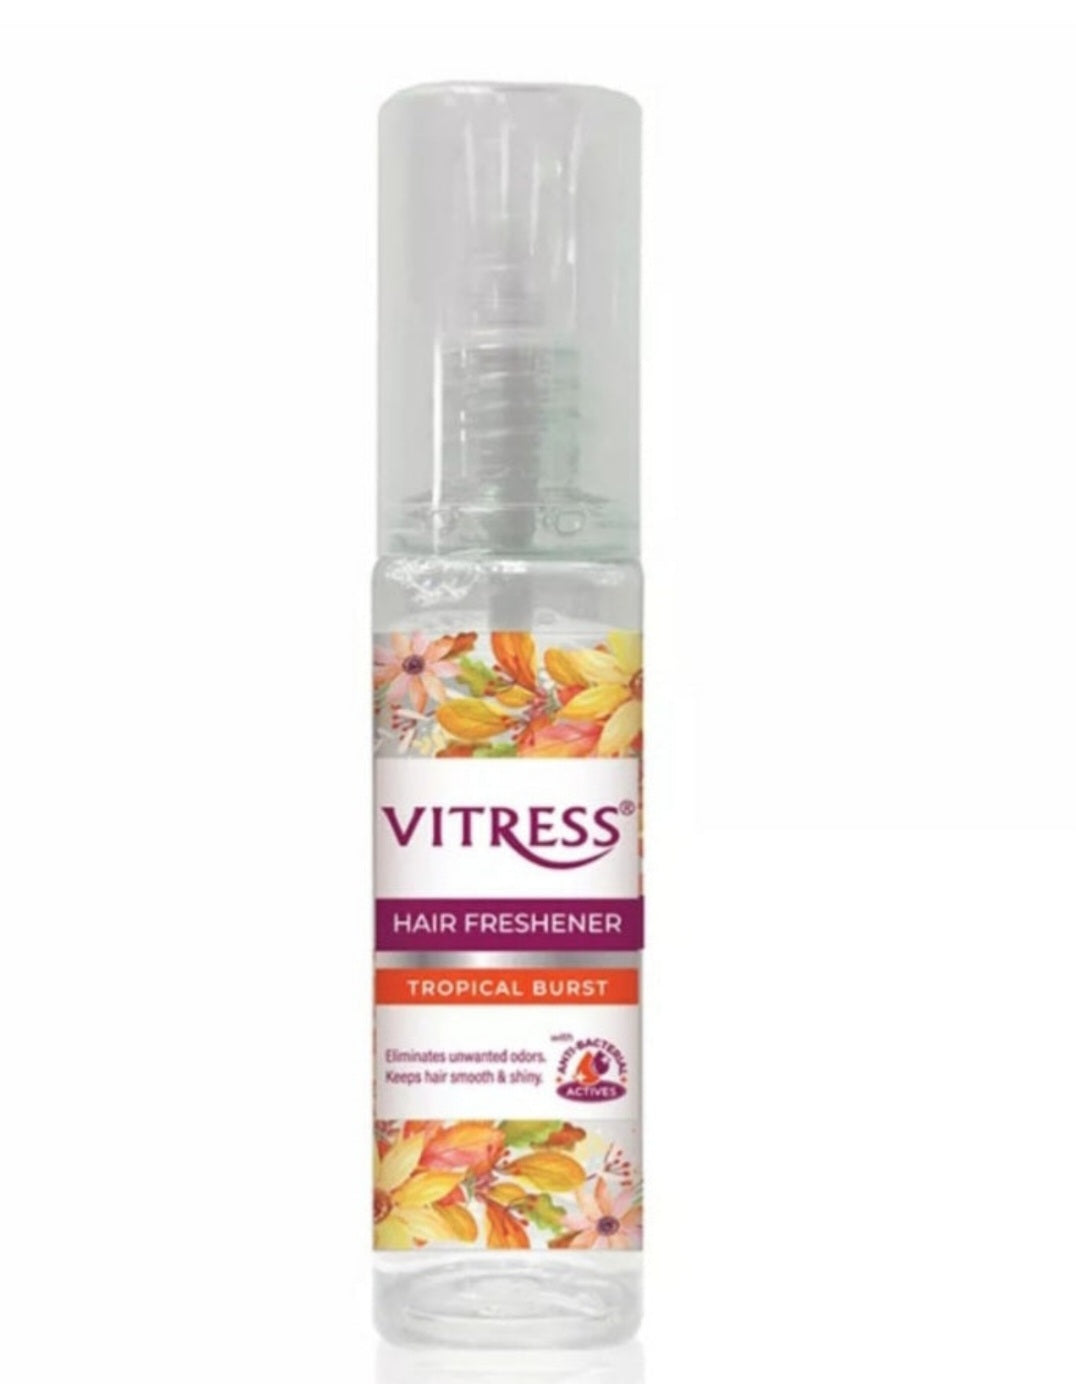 Vitress Hair Freshener